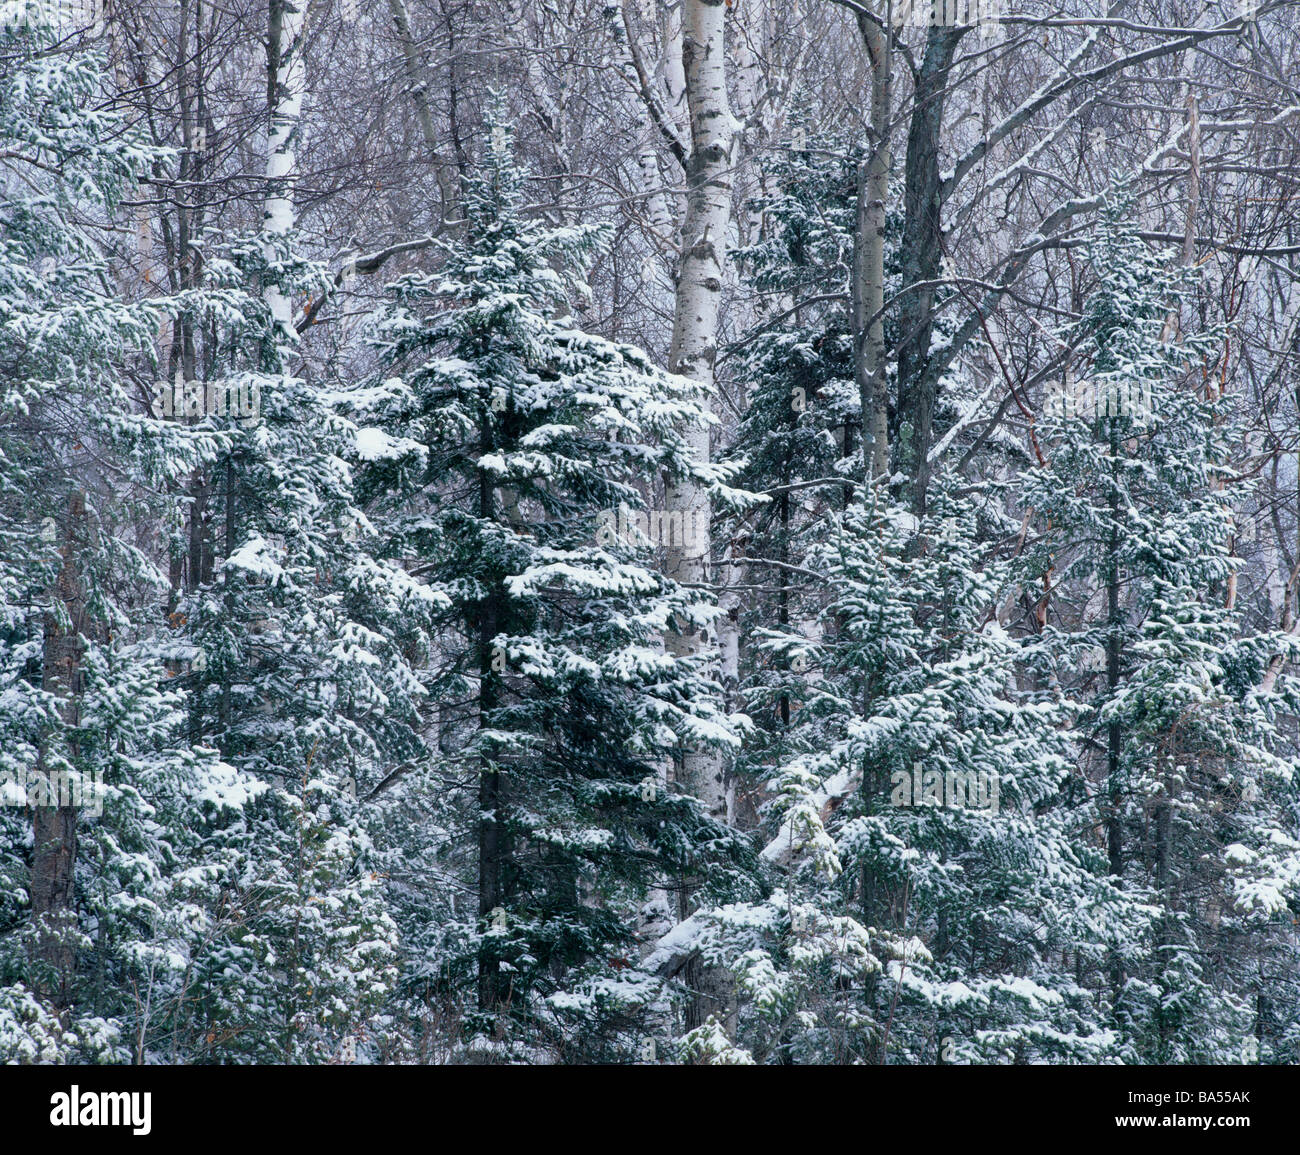 northern forest, Door County, Wisconsin Stock Photo